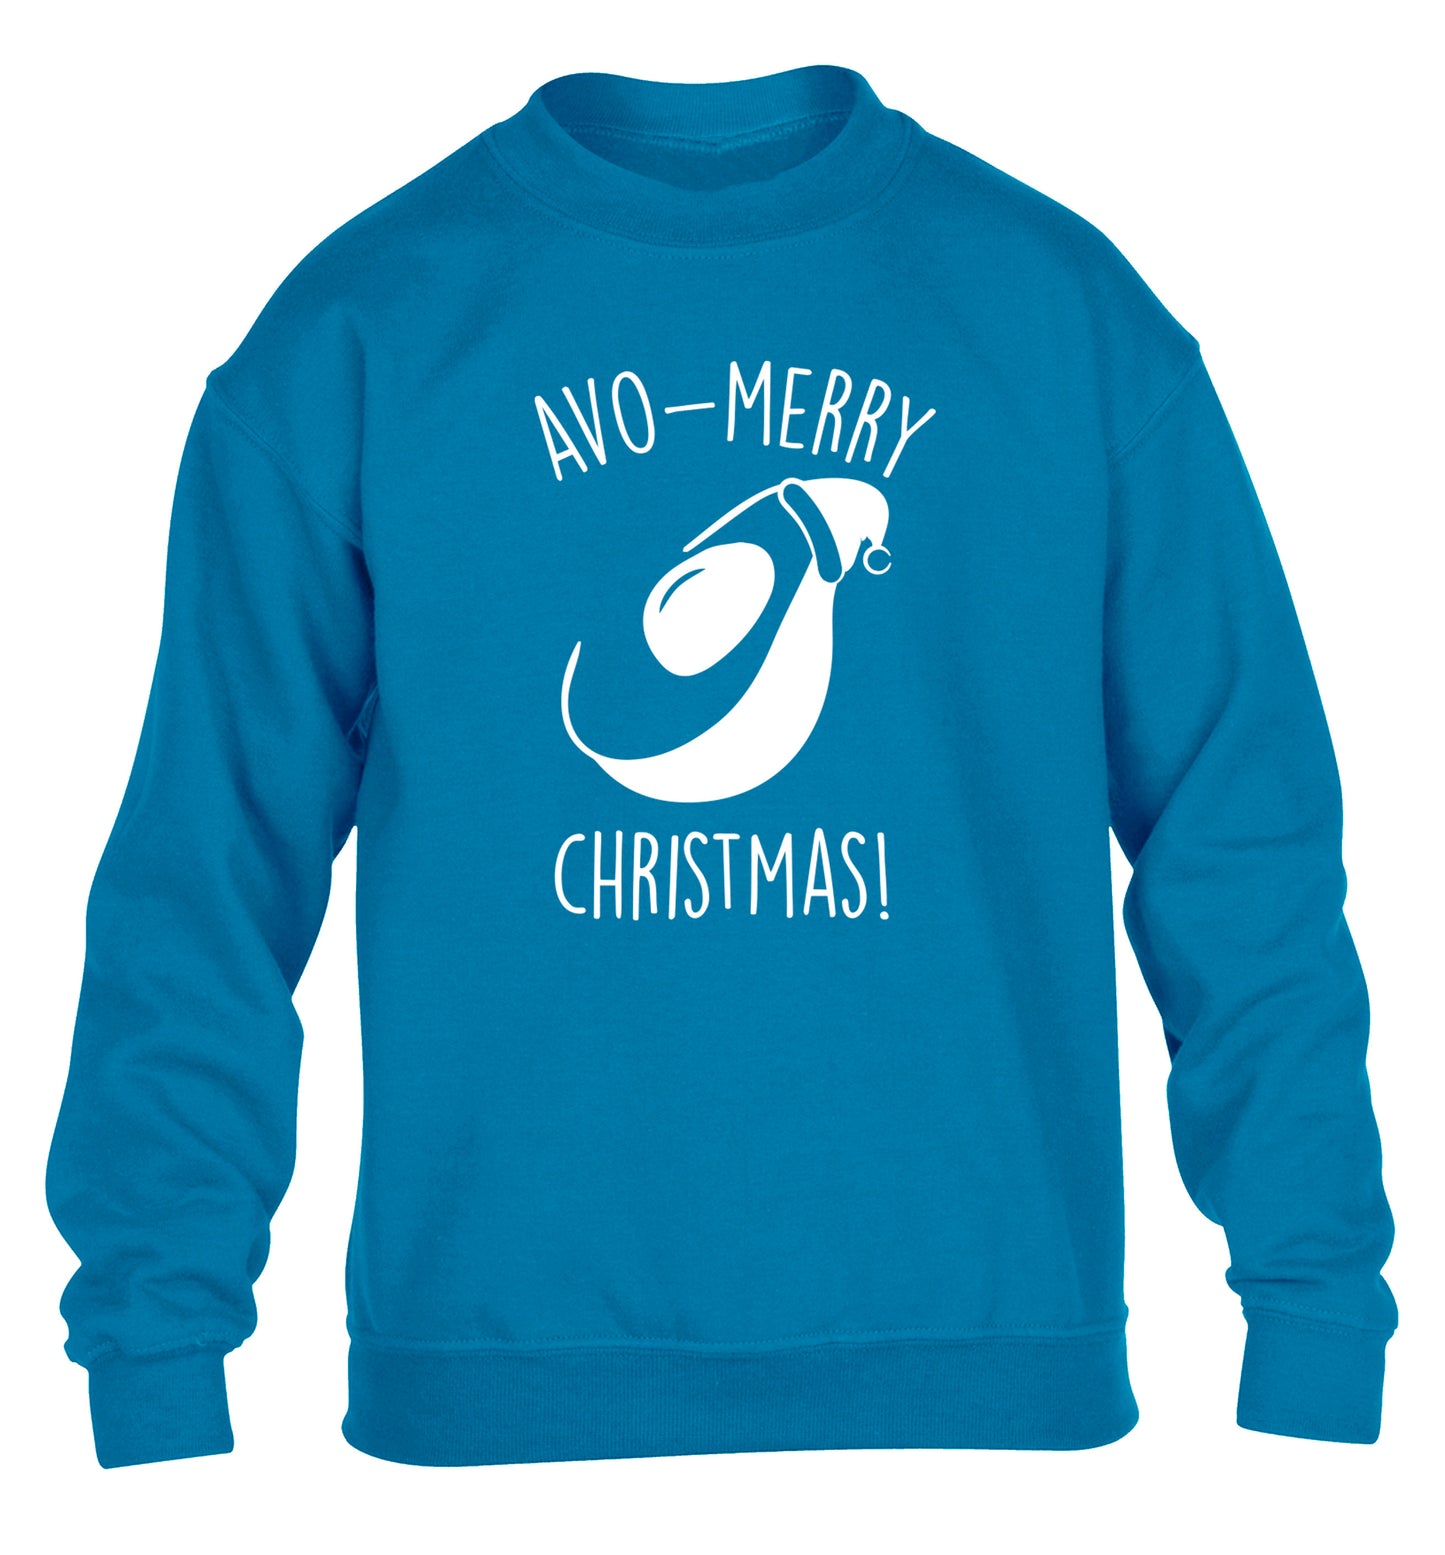 Avo-Merry Christmas children's blue sweater 12-13 Years